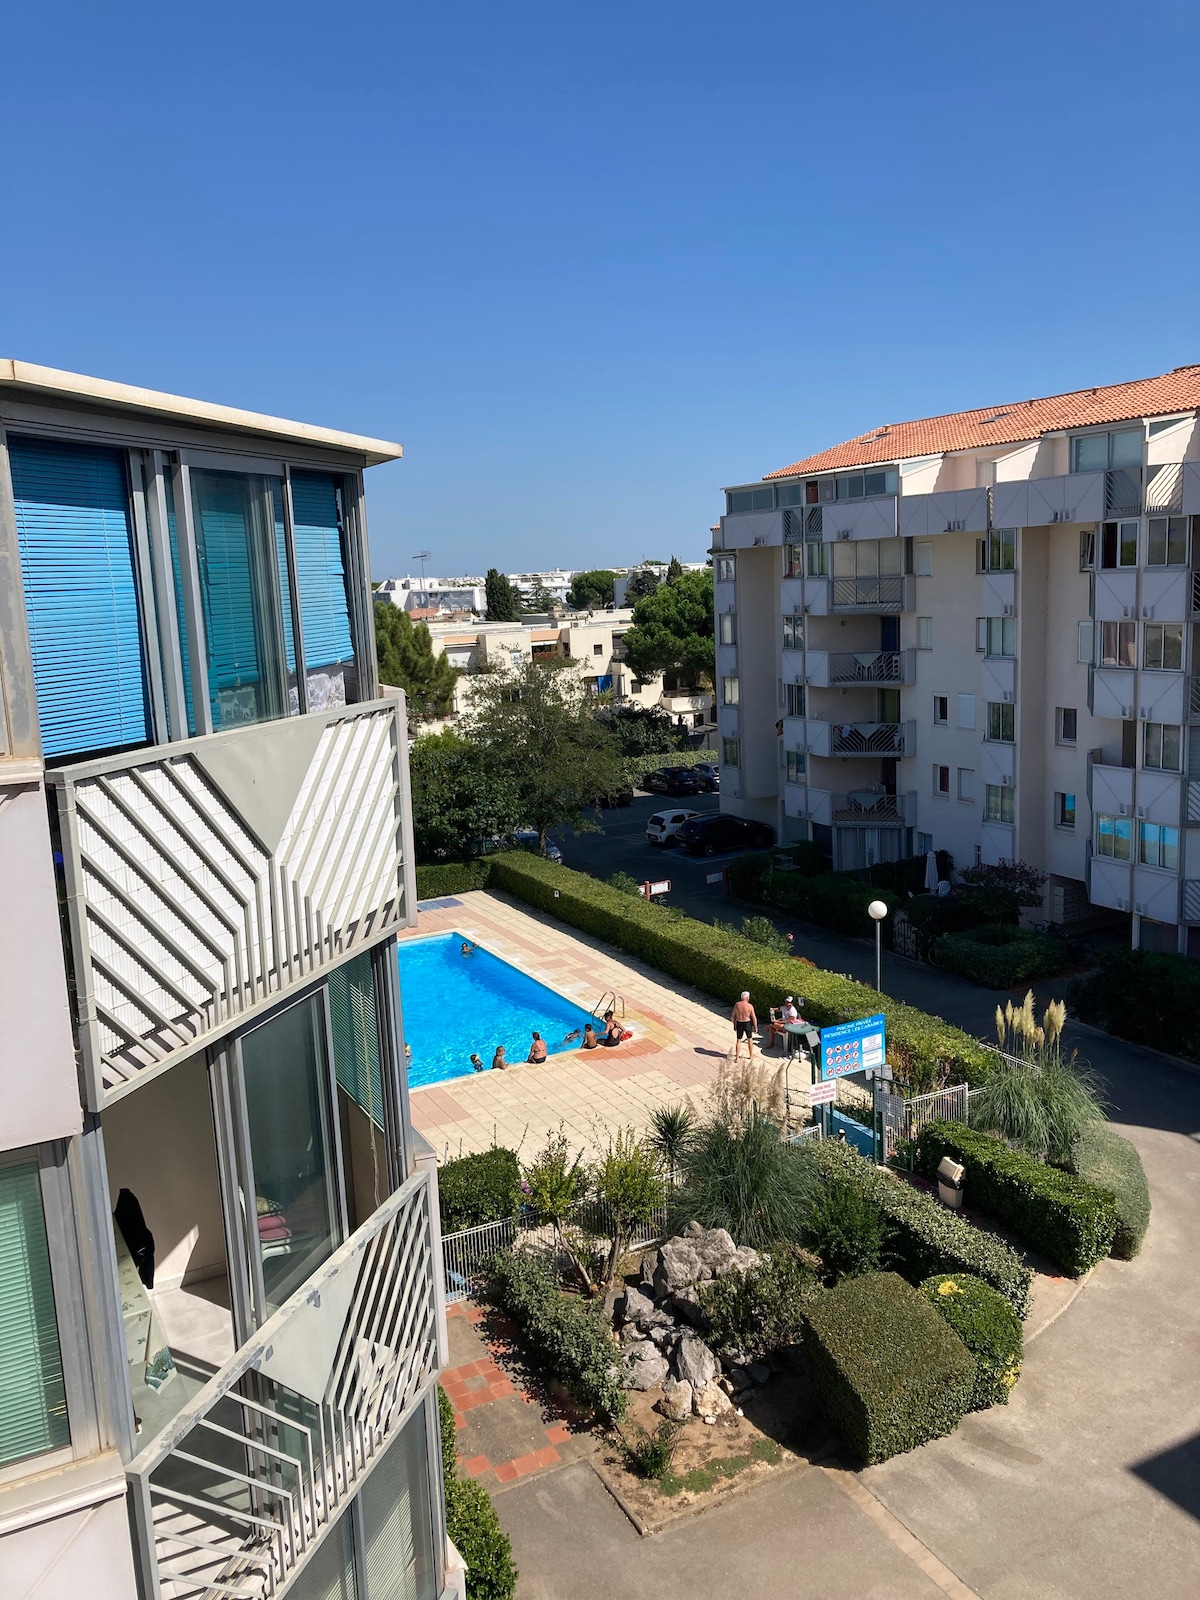 Le Grau-du-Roi : locations de logements avec piscine - Occitanie, France |  Airbnb